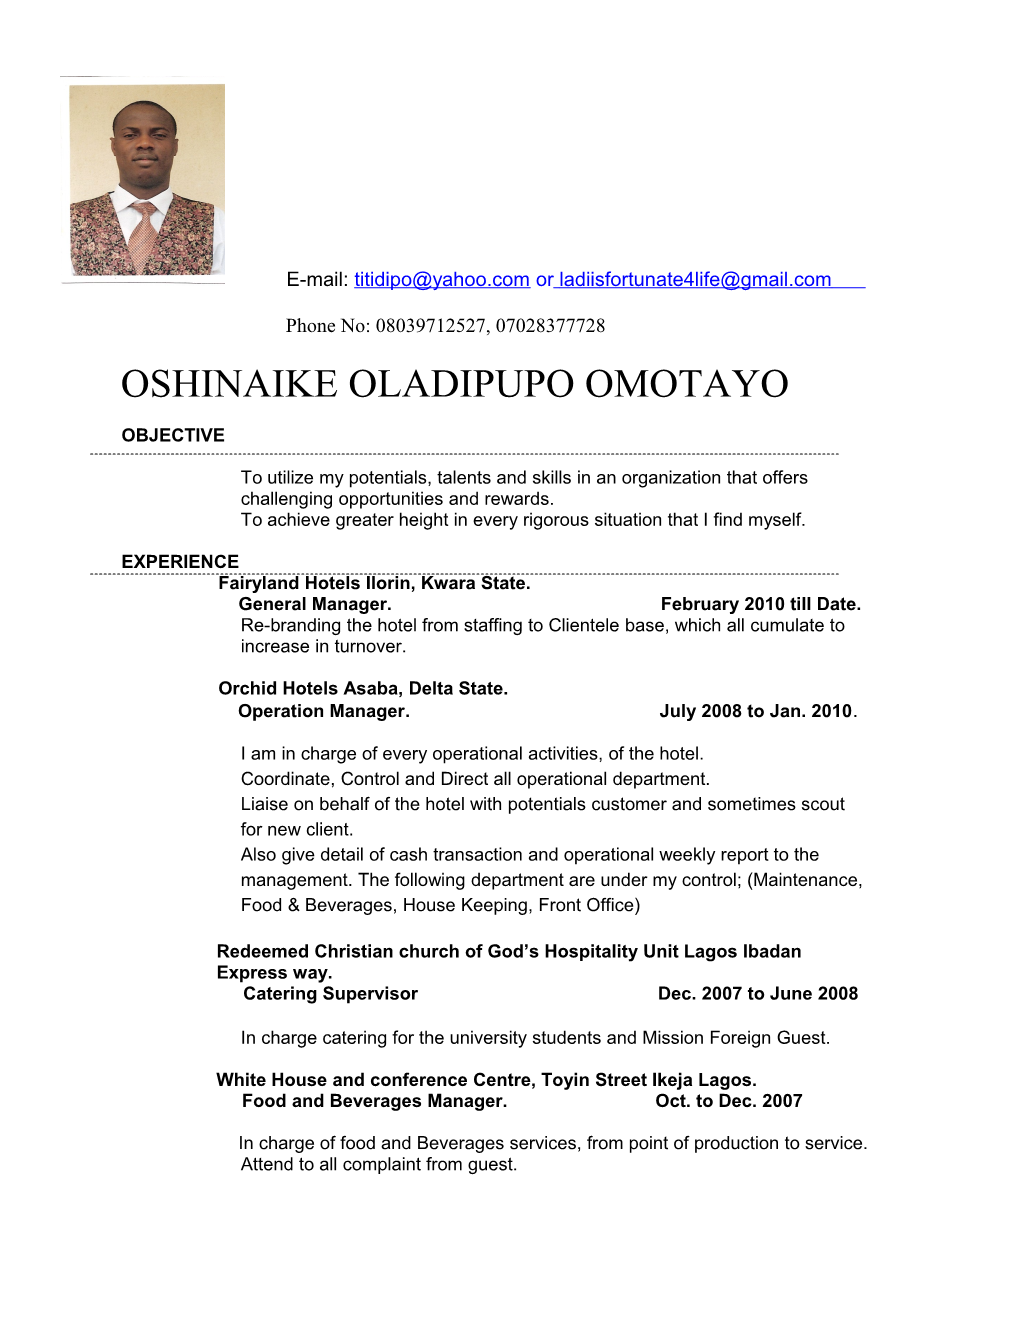 Oshinaike Oladipupo Omotayo